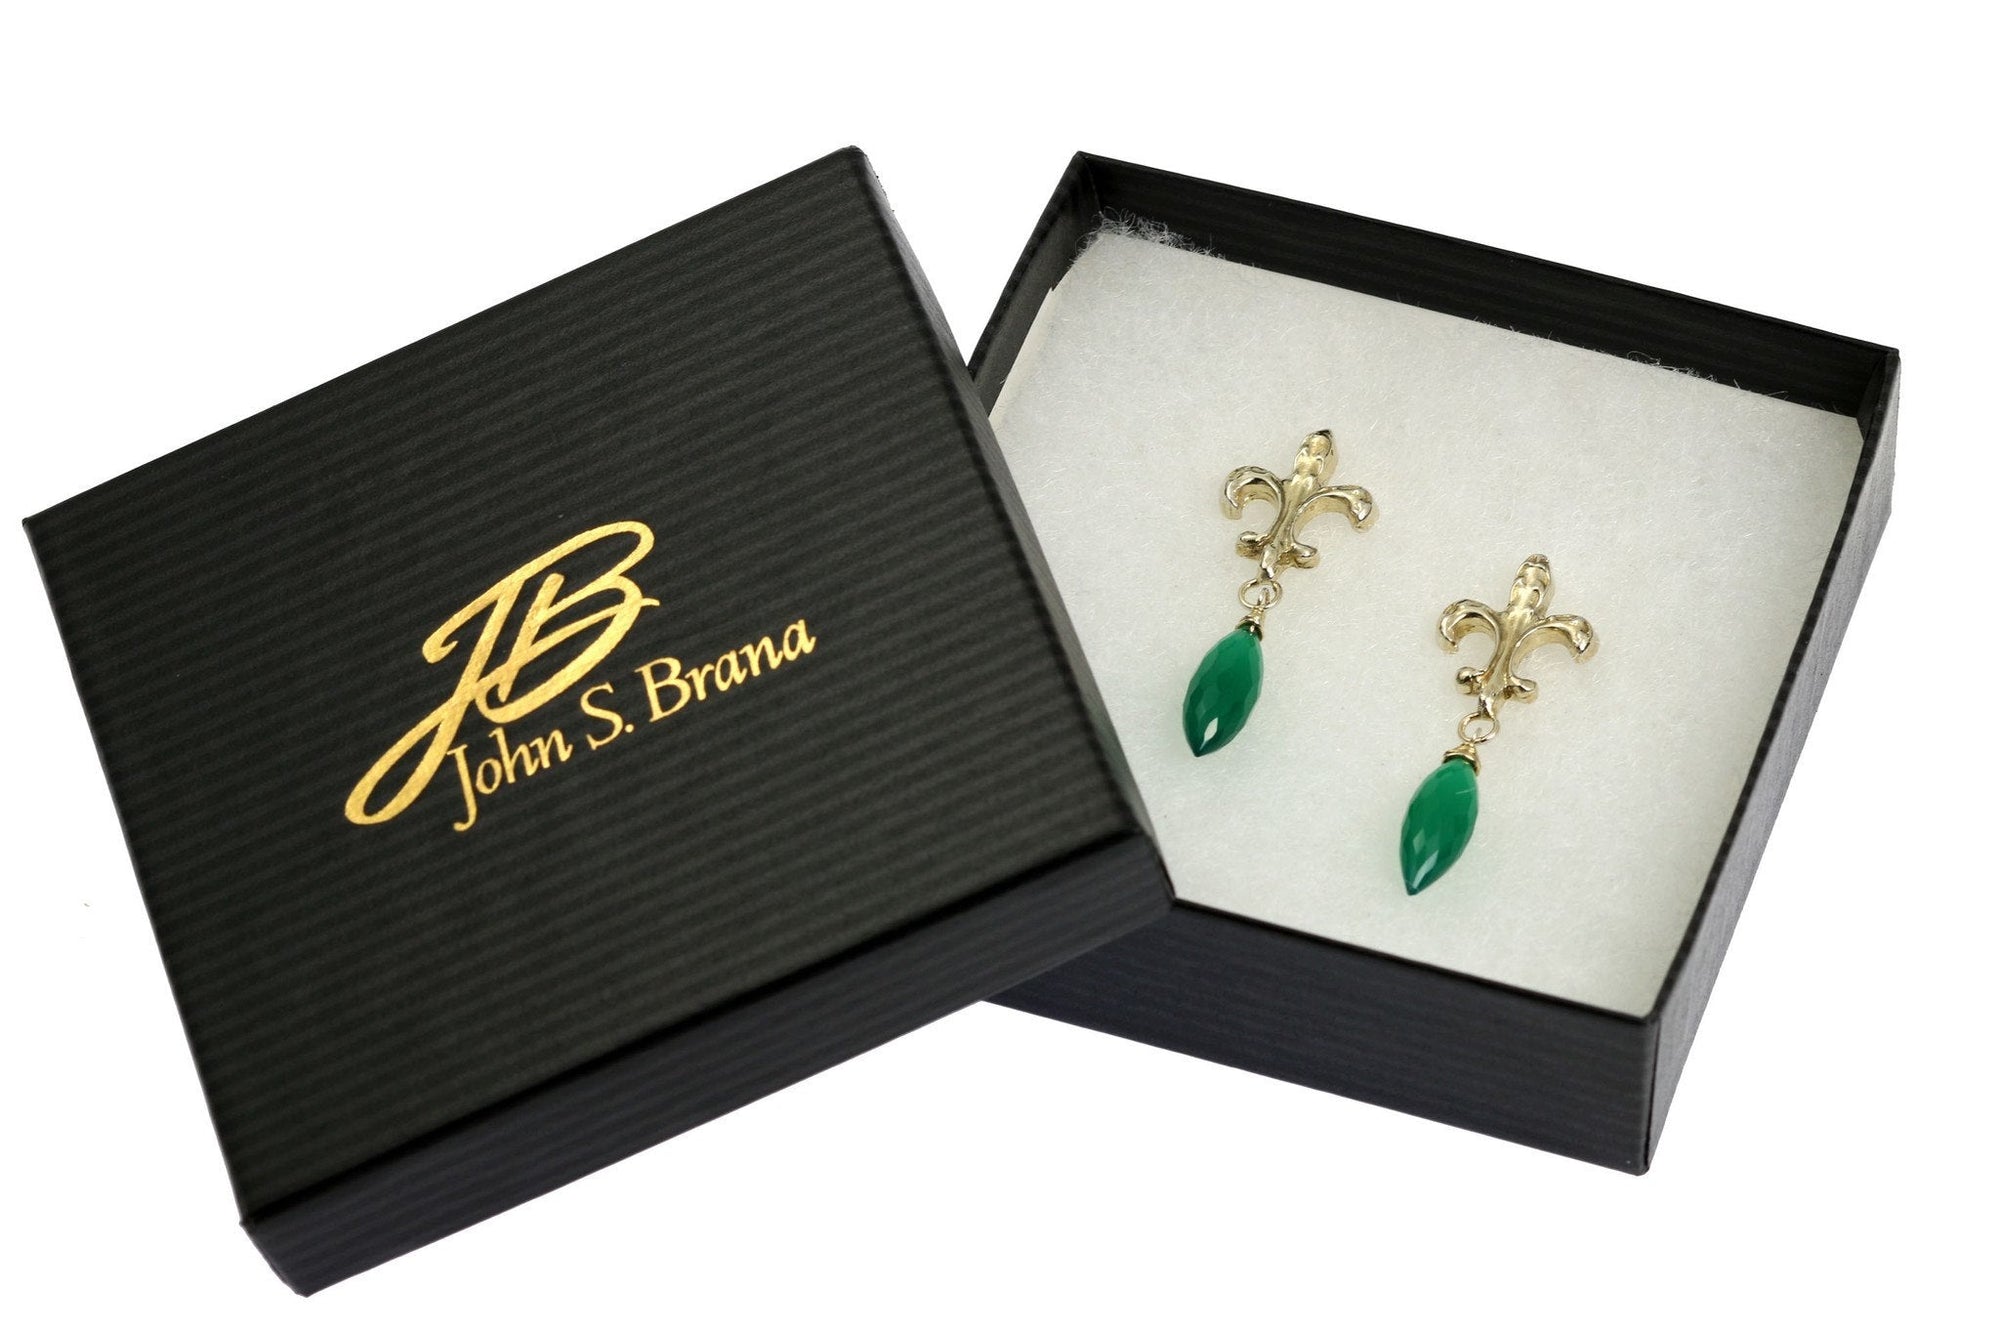 Green Onyx Sterling Silver Fleur-de-lis Earrings in Gift Box